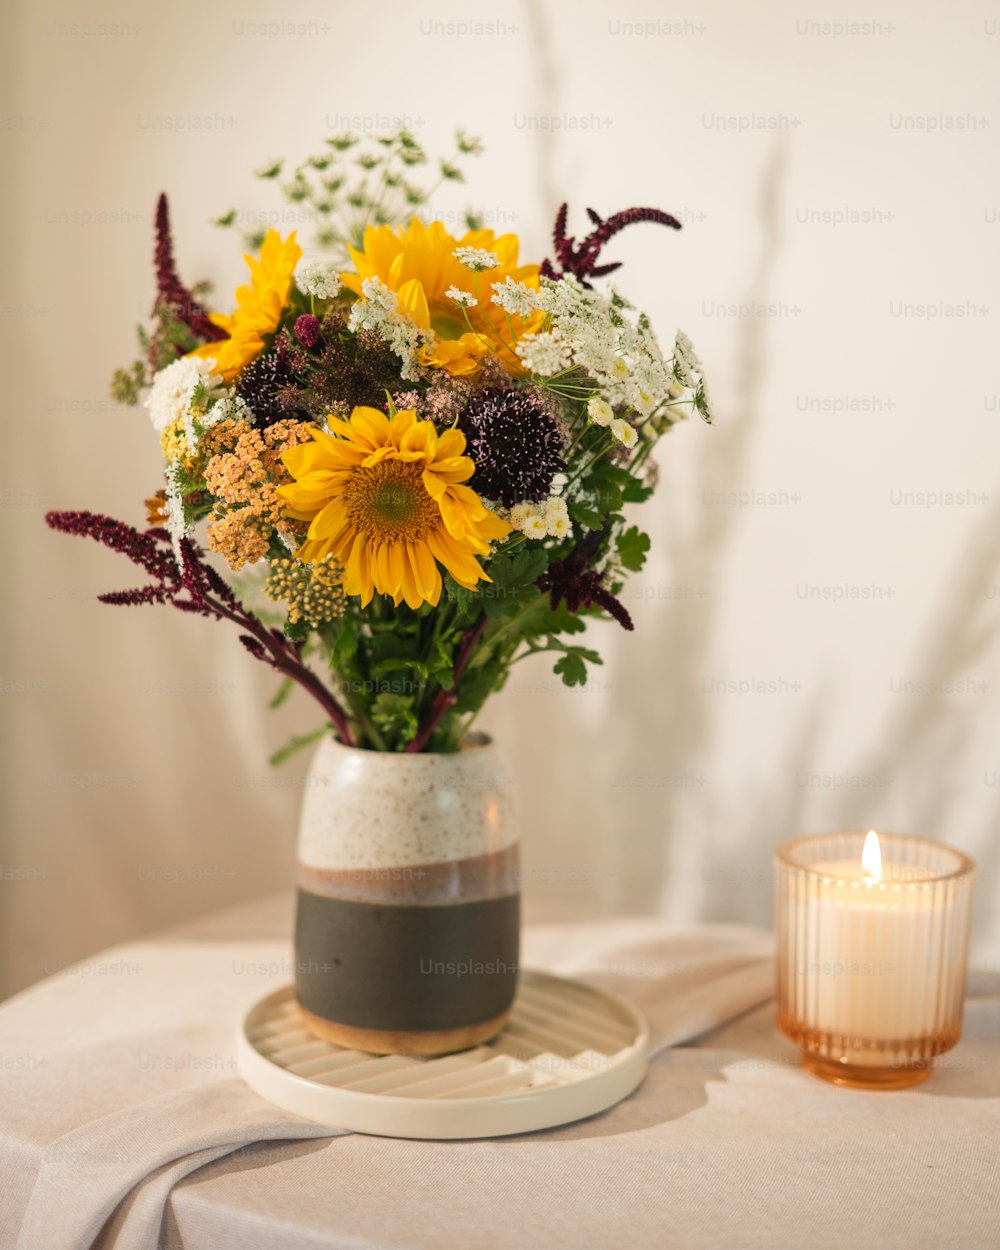 Un vase rempli de beaucoup de fleurs sur une table